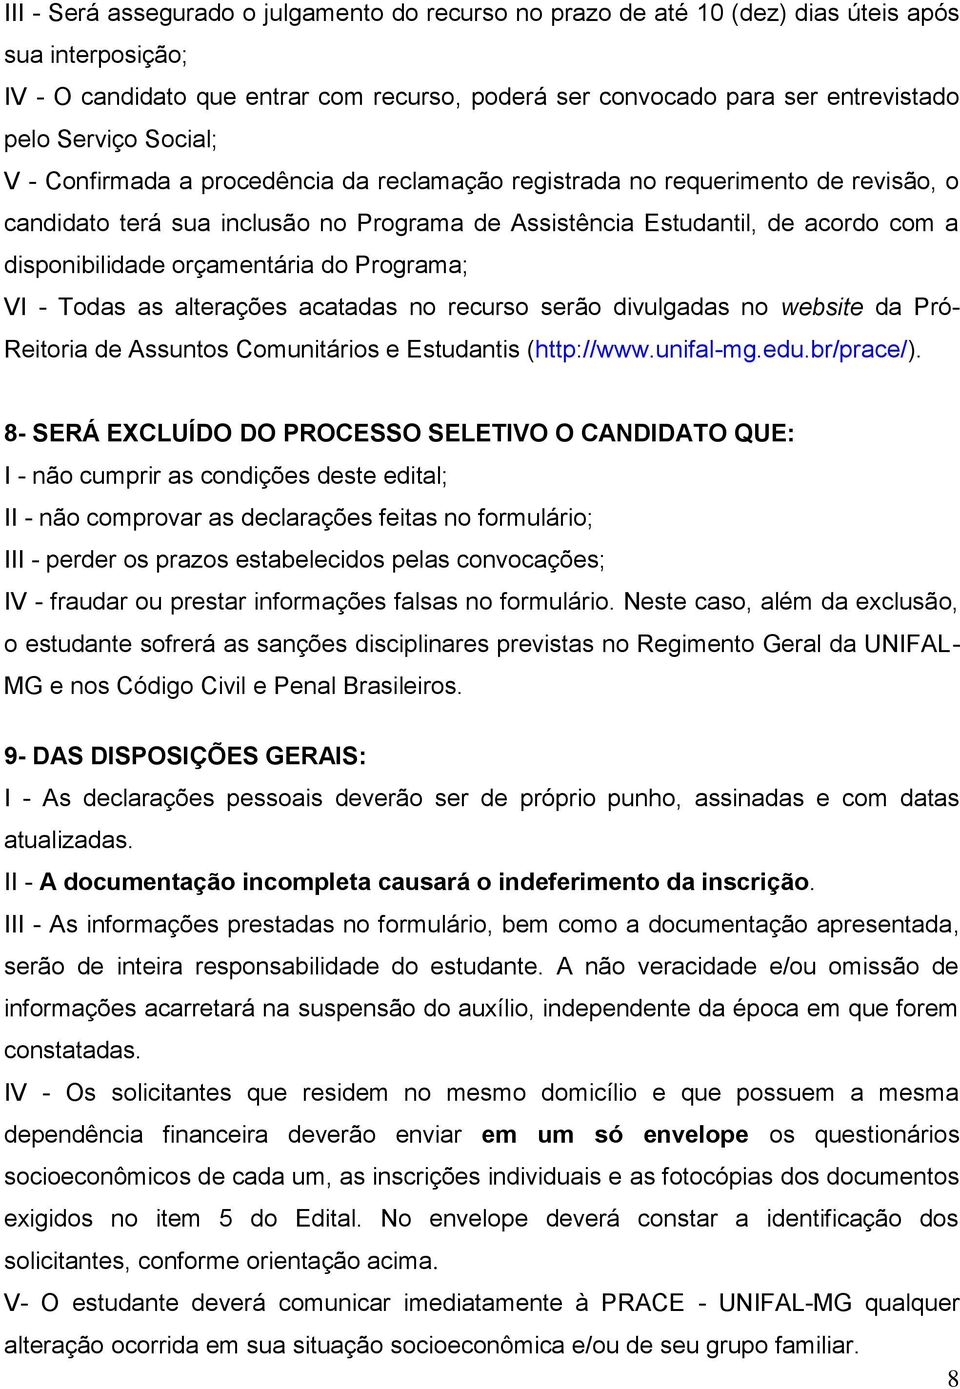 orçamentária do Programa; VI - Todas as alterações acatadas no recurso serão divulgadas no website da Pró- Reitoria de Assuntos Comunitários e Estudantis (http://www.unifal-mg.edu.br/prace/).